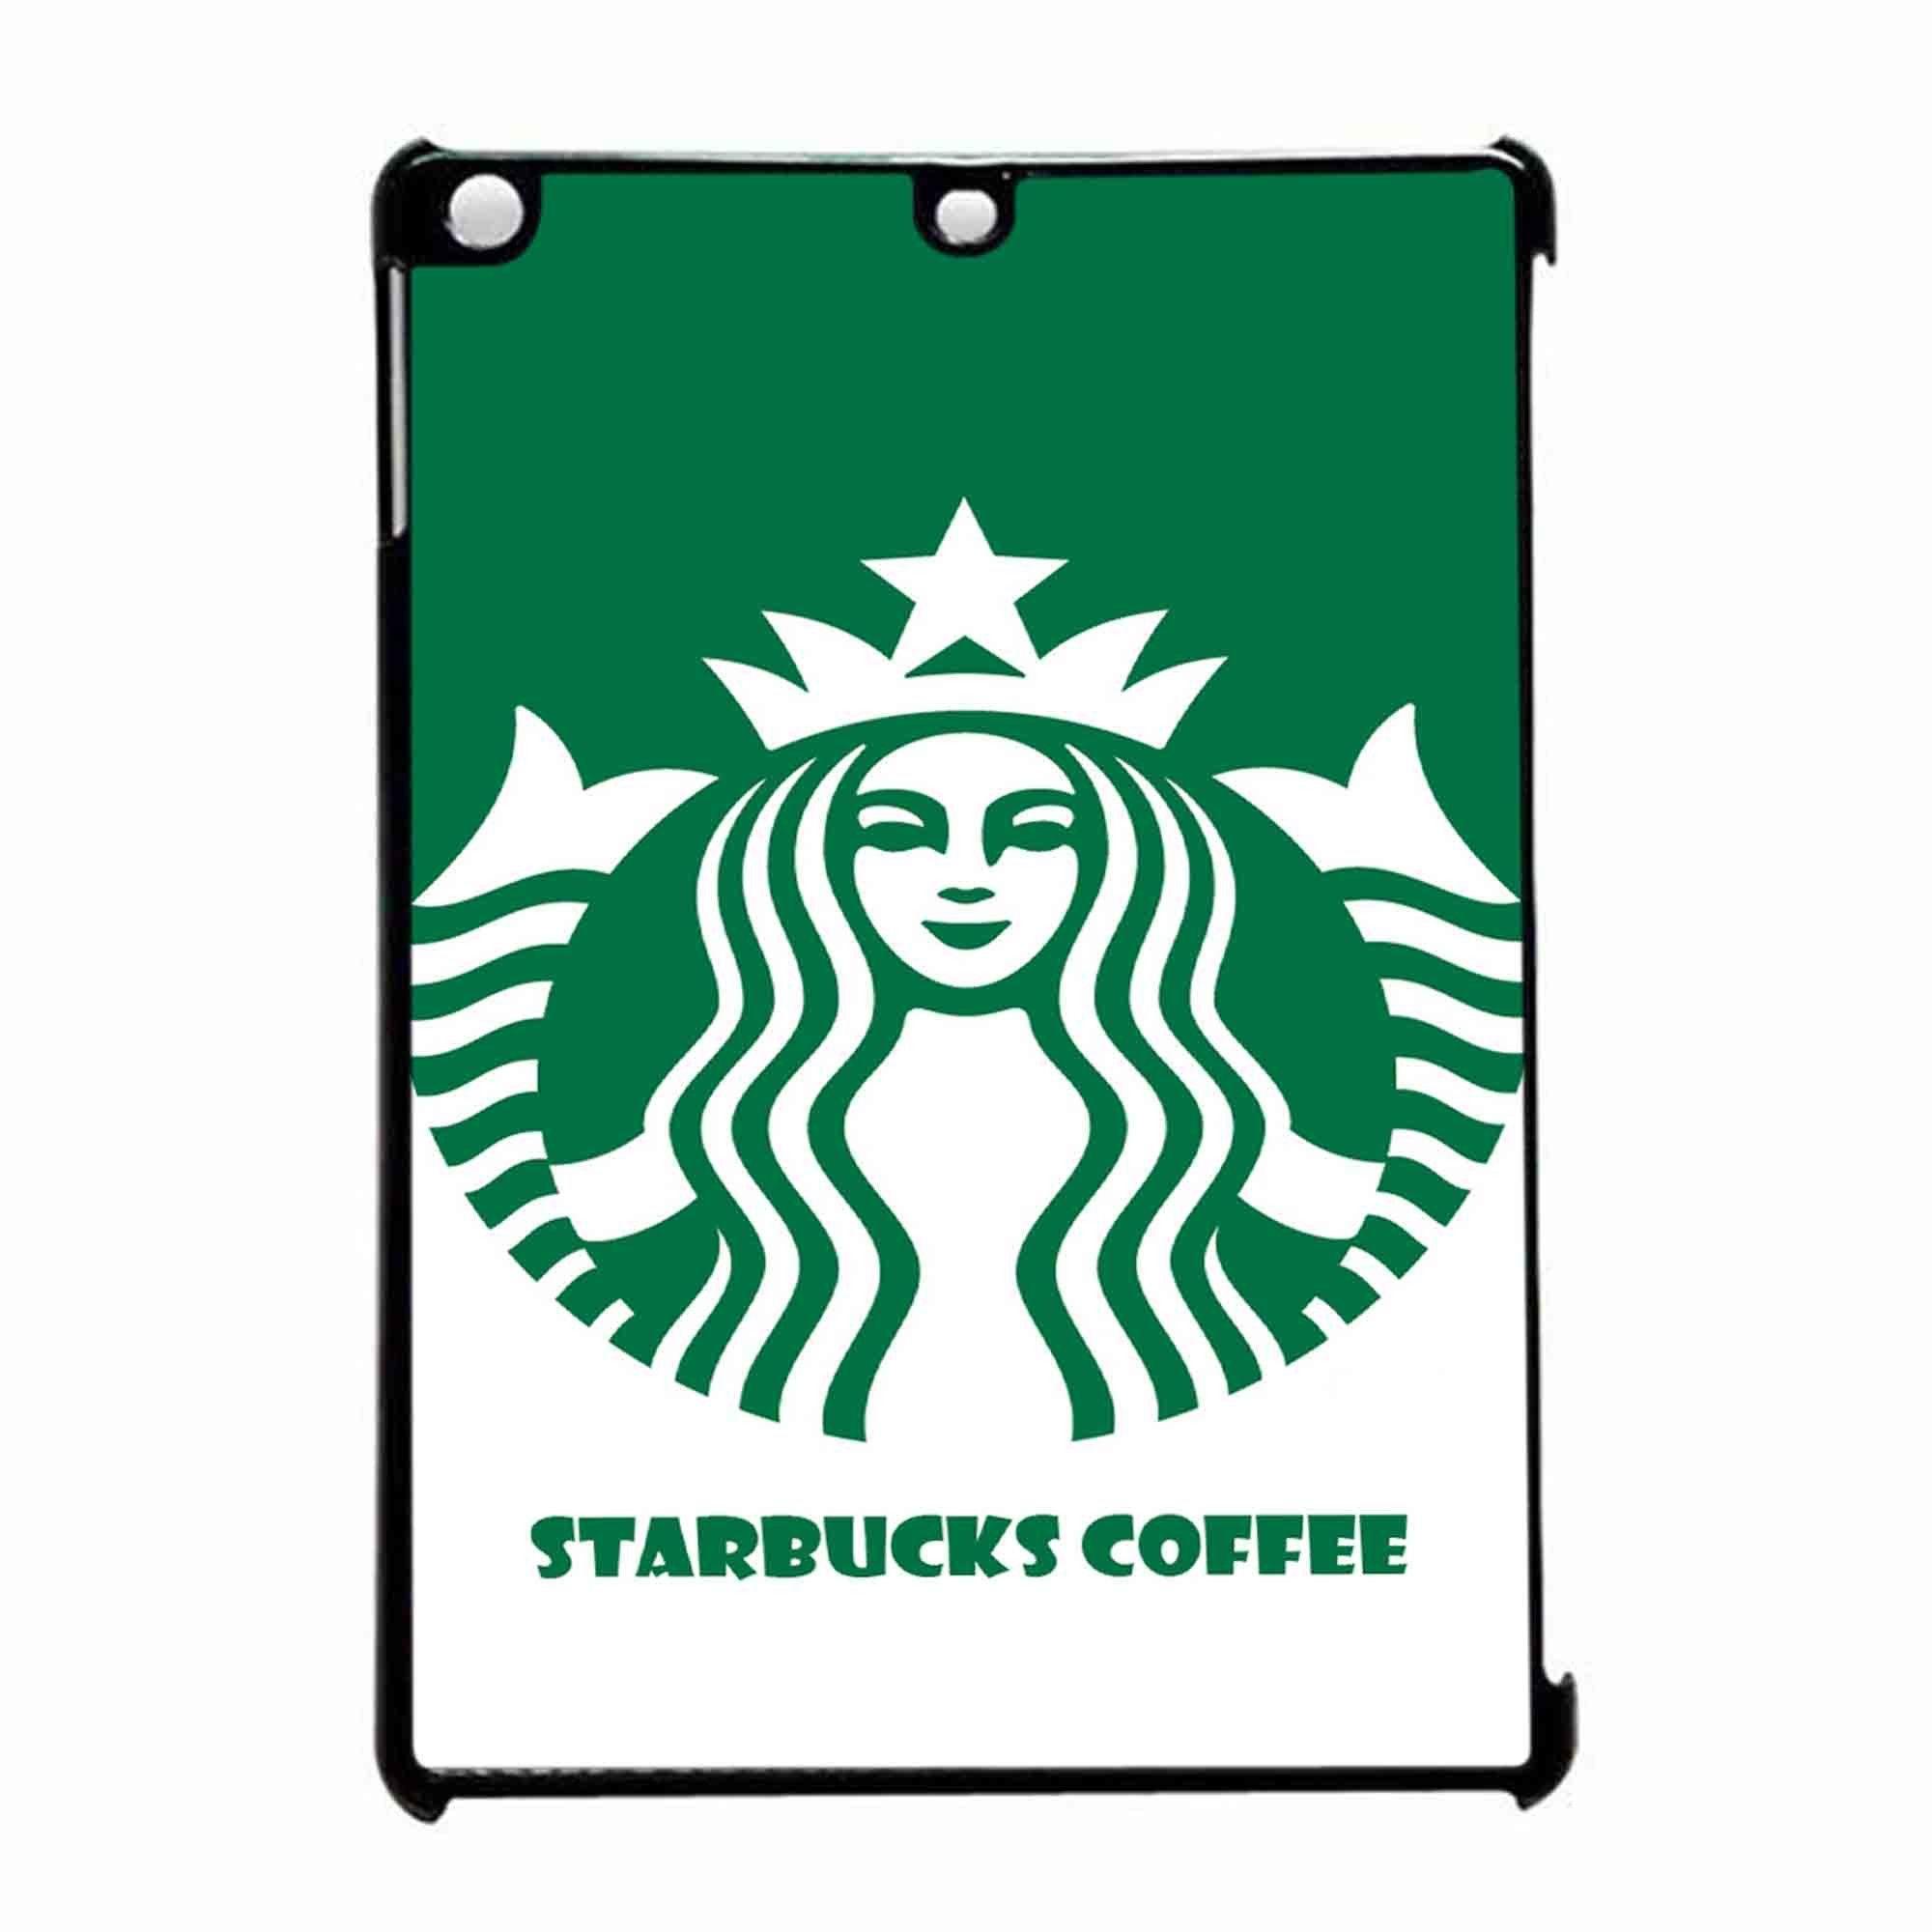 Mini Galaxy Starbucks Logo - Starbucks Coffee Galaxy iPad Air Case | Products | Pinterest | Ipad ...